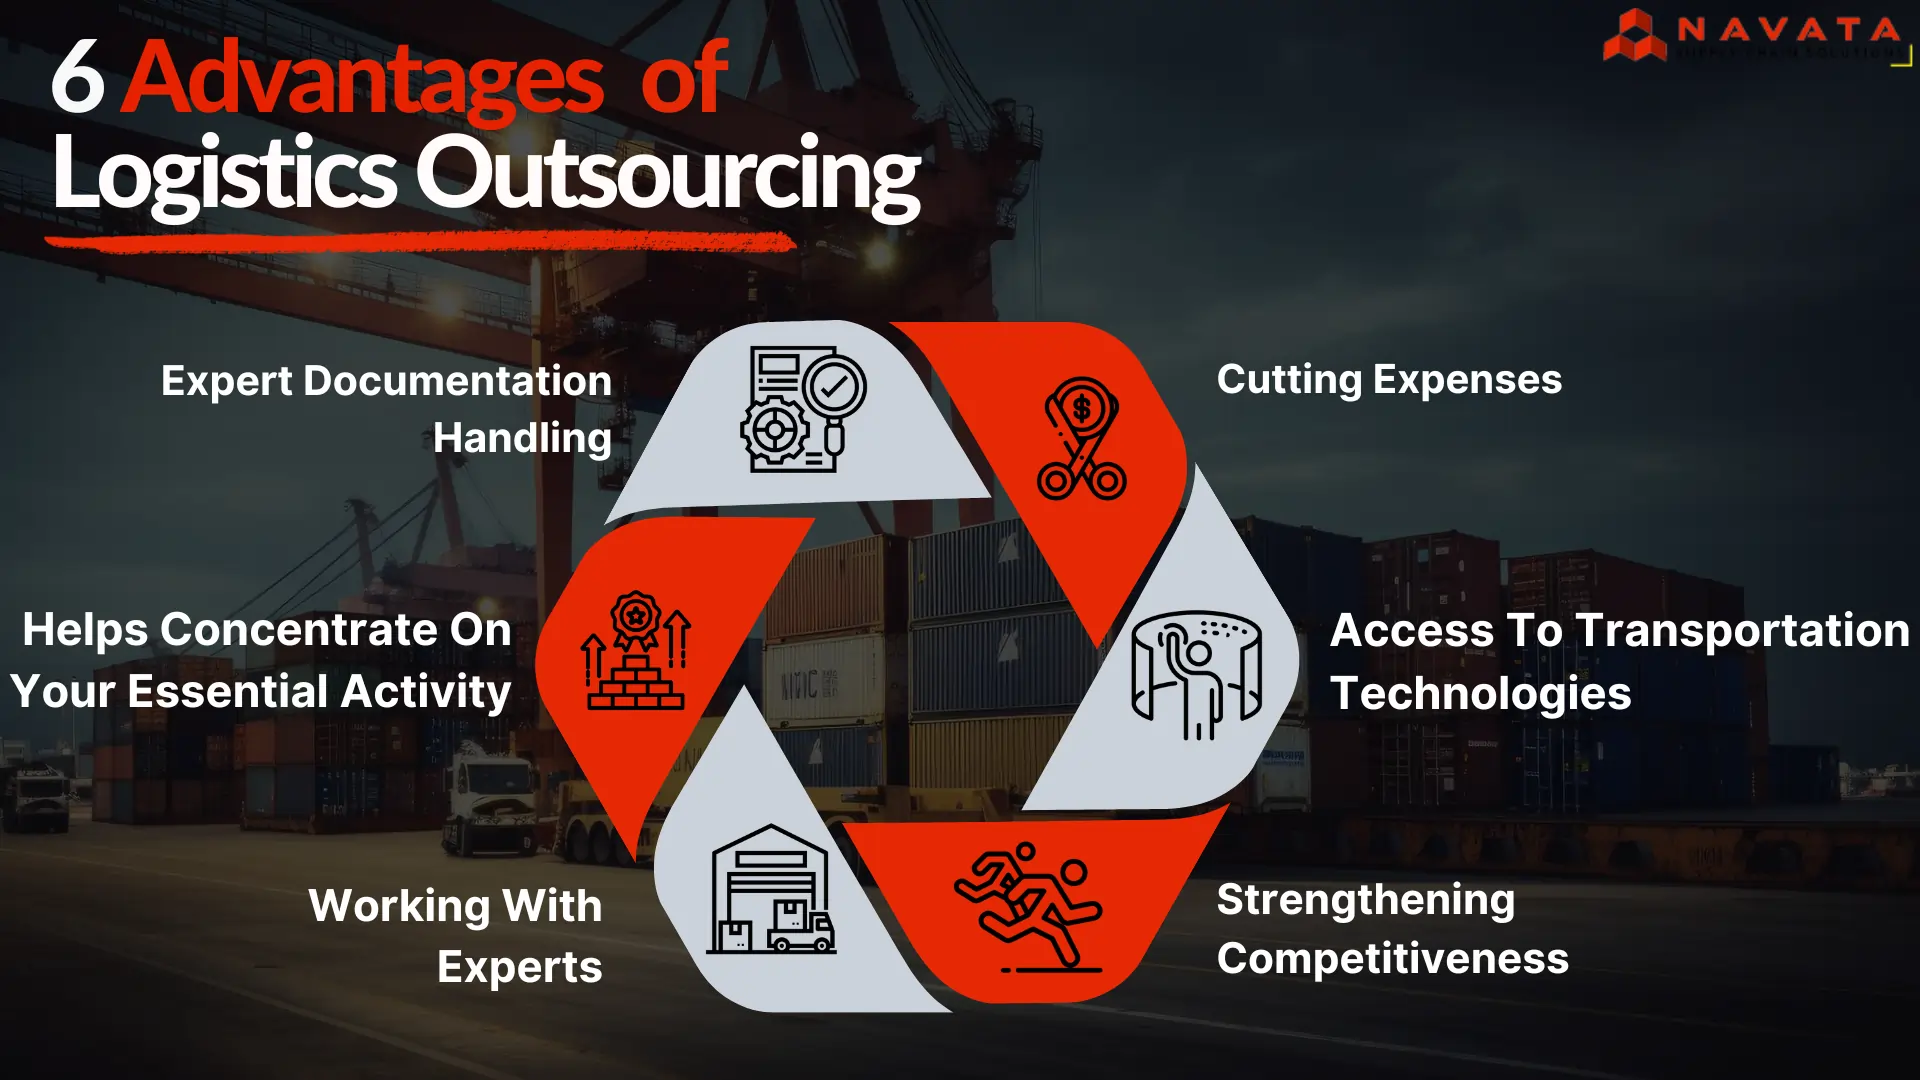 Advantages of Logistics Outsourcing